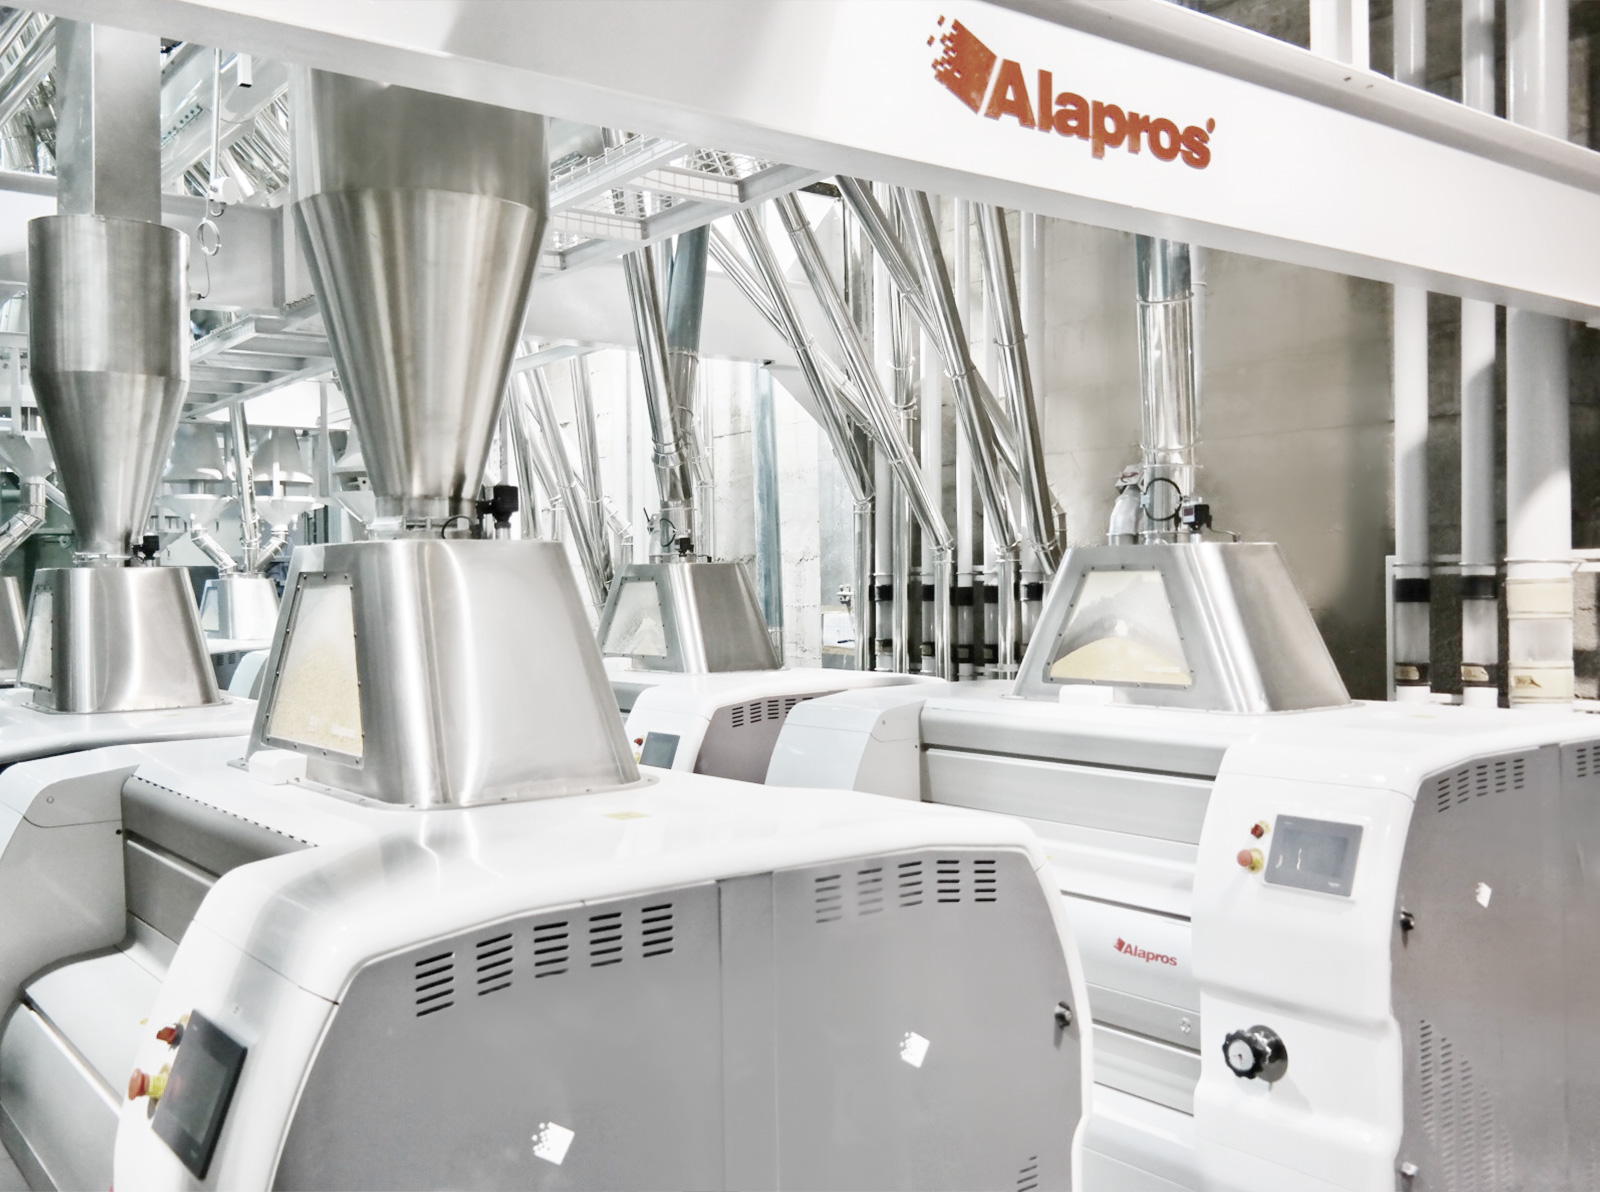 alapros MINOCONGO / D.R. Congo - 300 Ton / 24h Maize Flour Mill